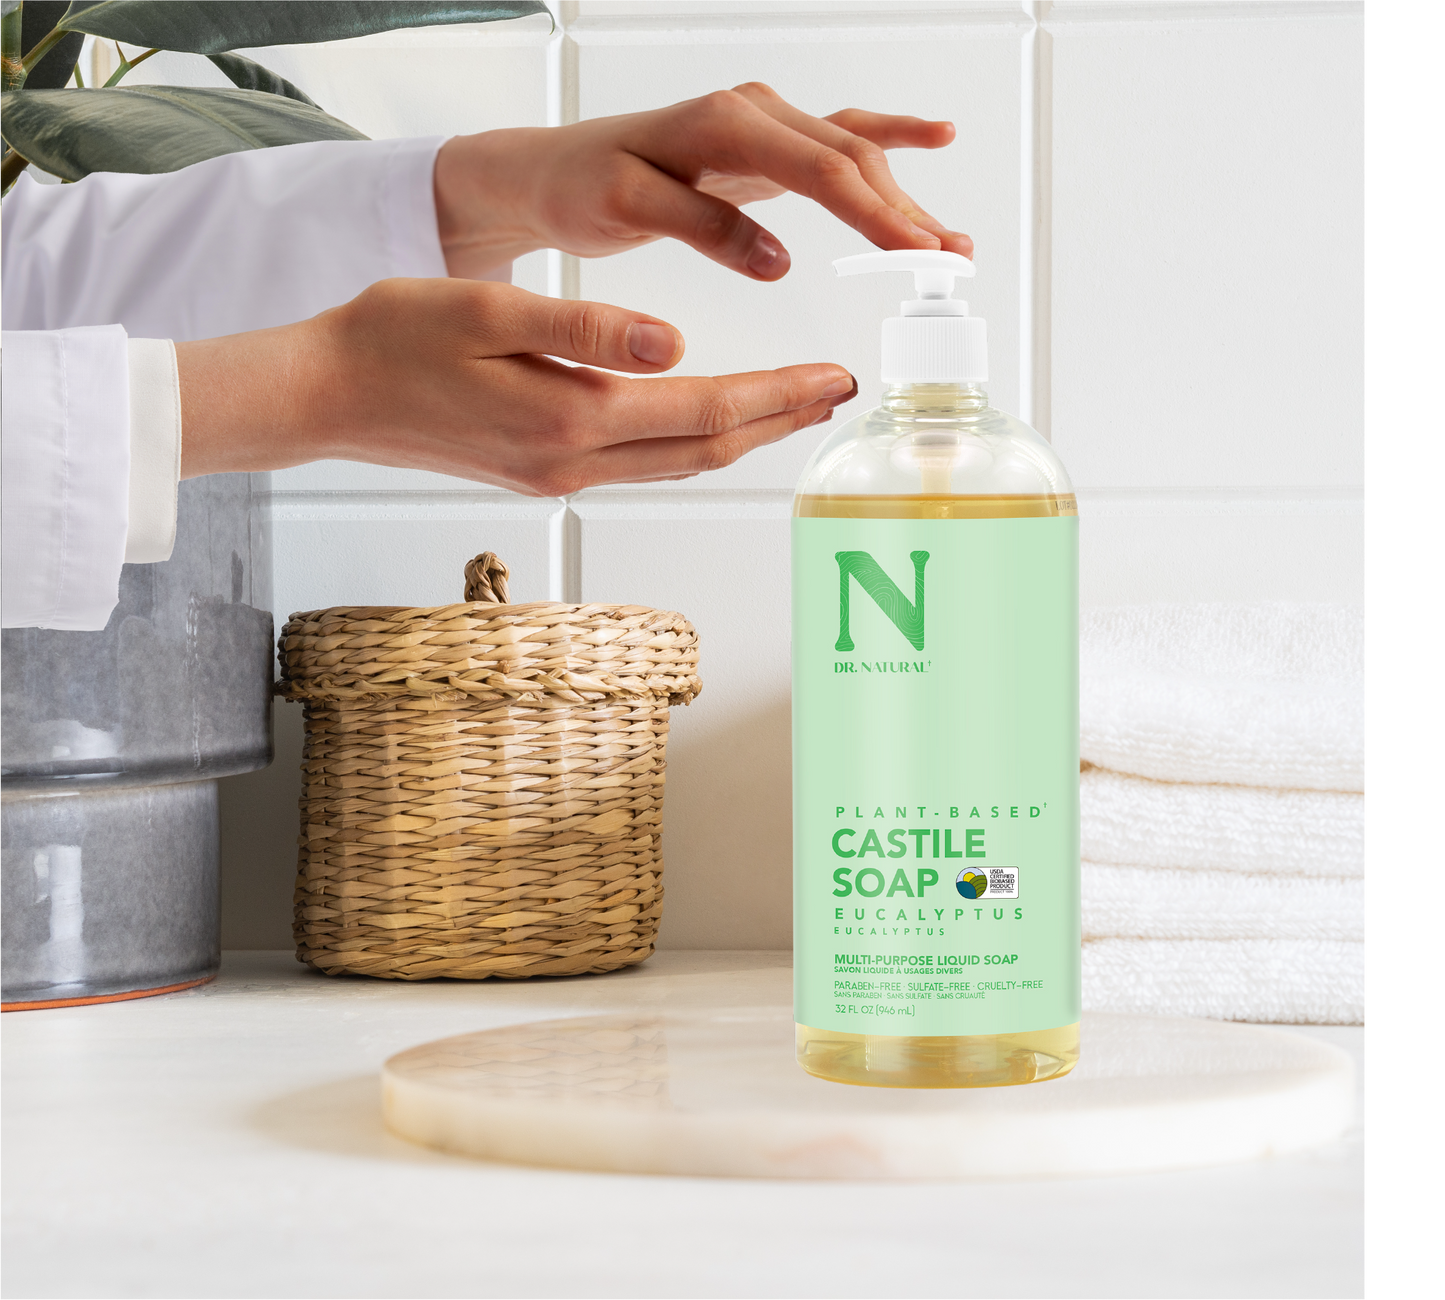    Dr. Natural Plant Based Castile Liquid Soap - Eucalyptus